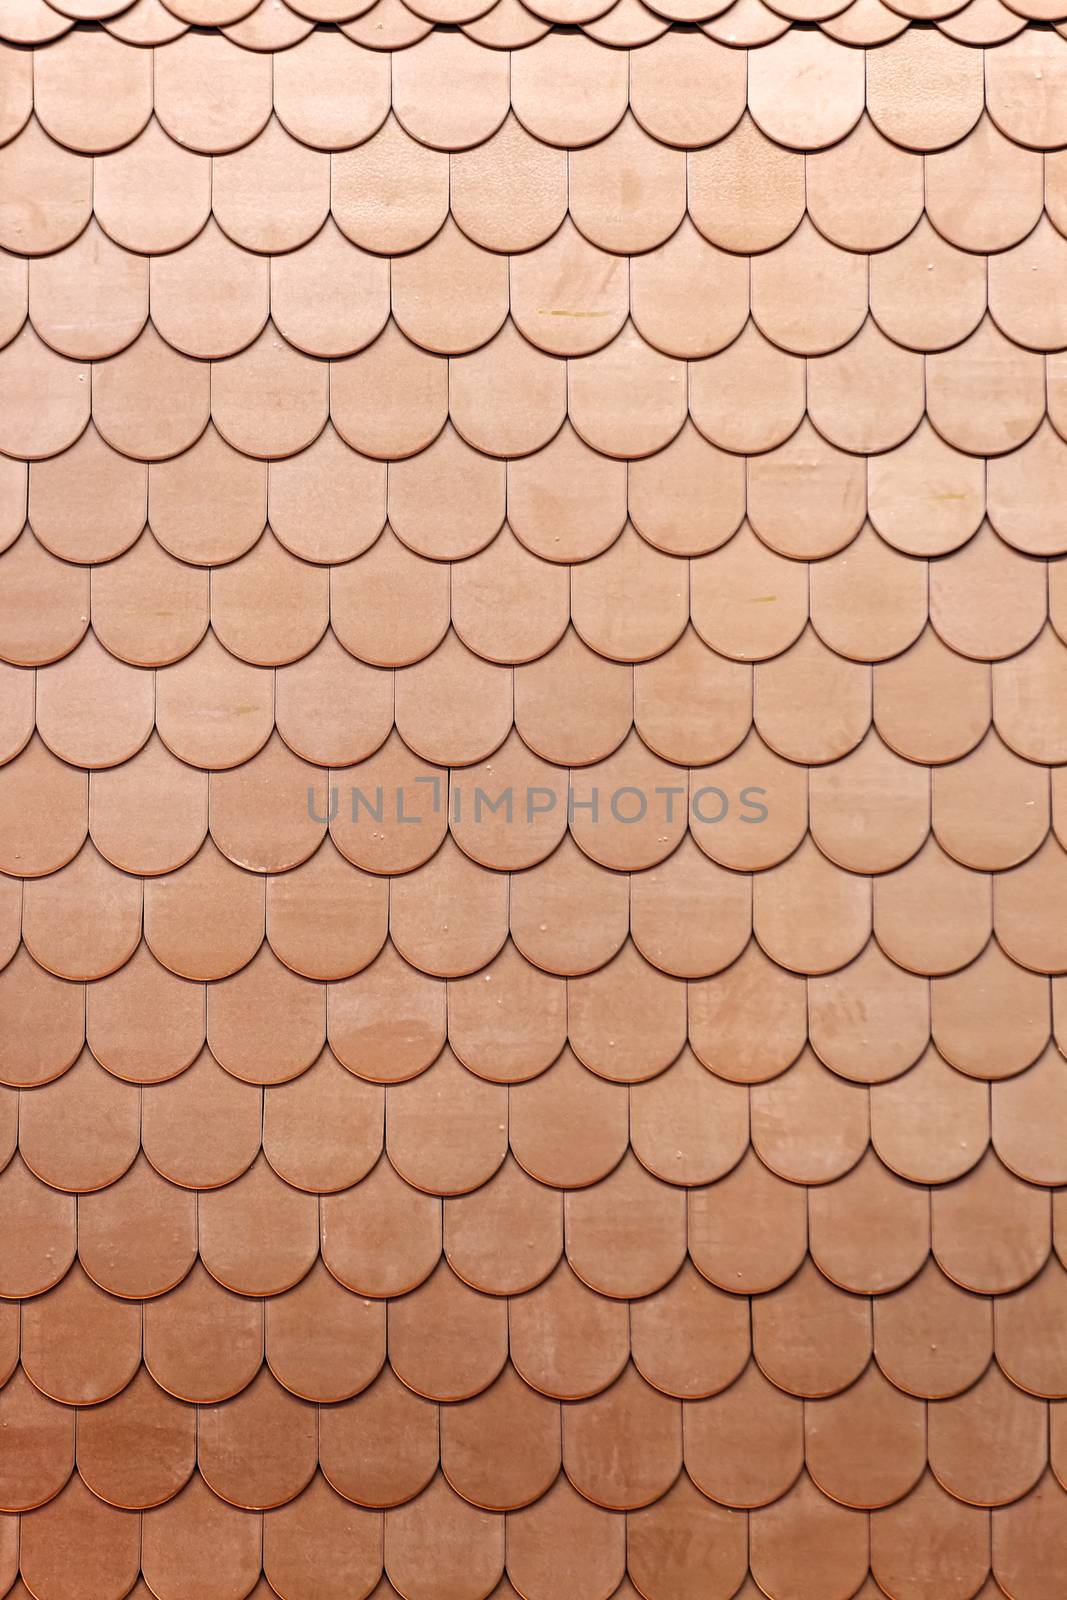 pattern detail of orange ceramic roof tiles